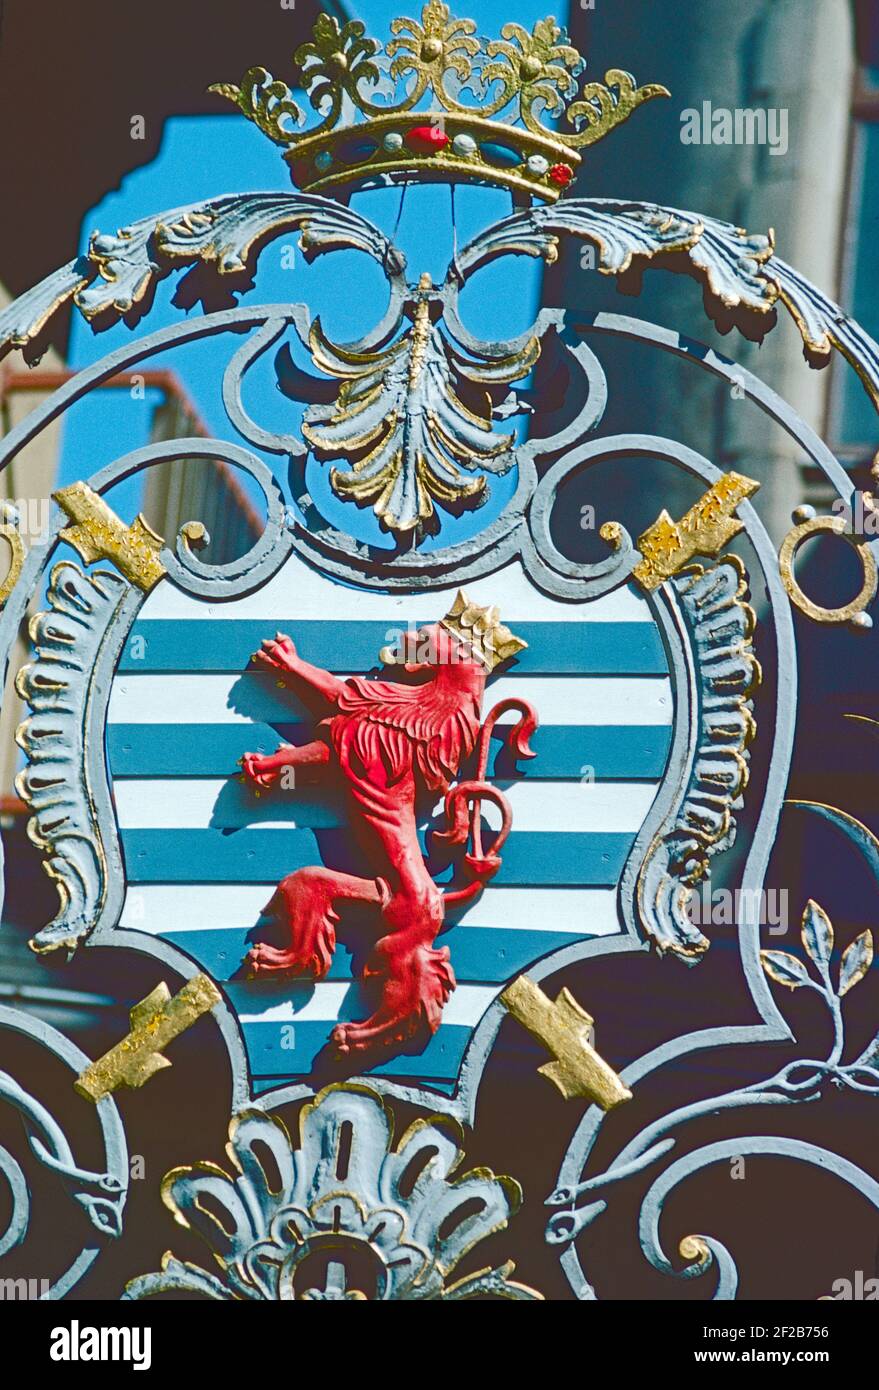 Lussemburgo. Lo stemma lussemburghese raffigurato sulle porte del palazzo reale nella Città Vecchia. Foto Stock